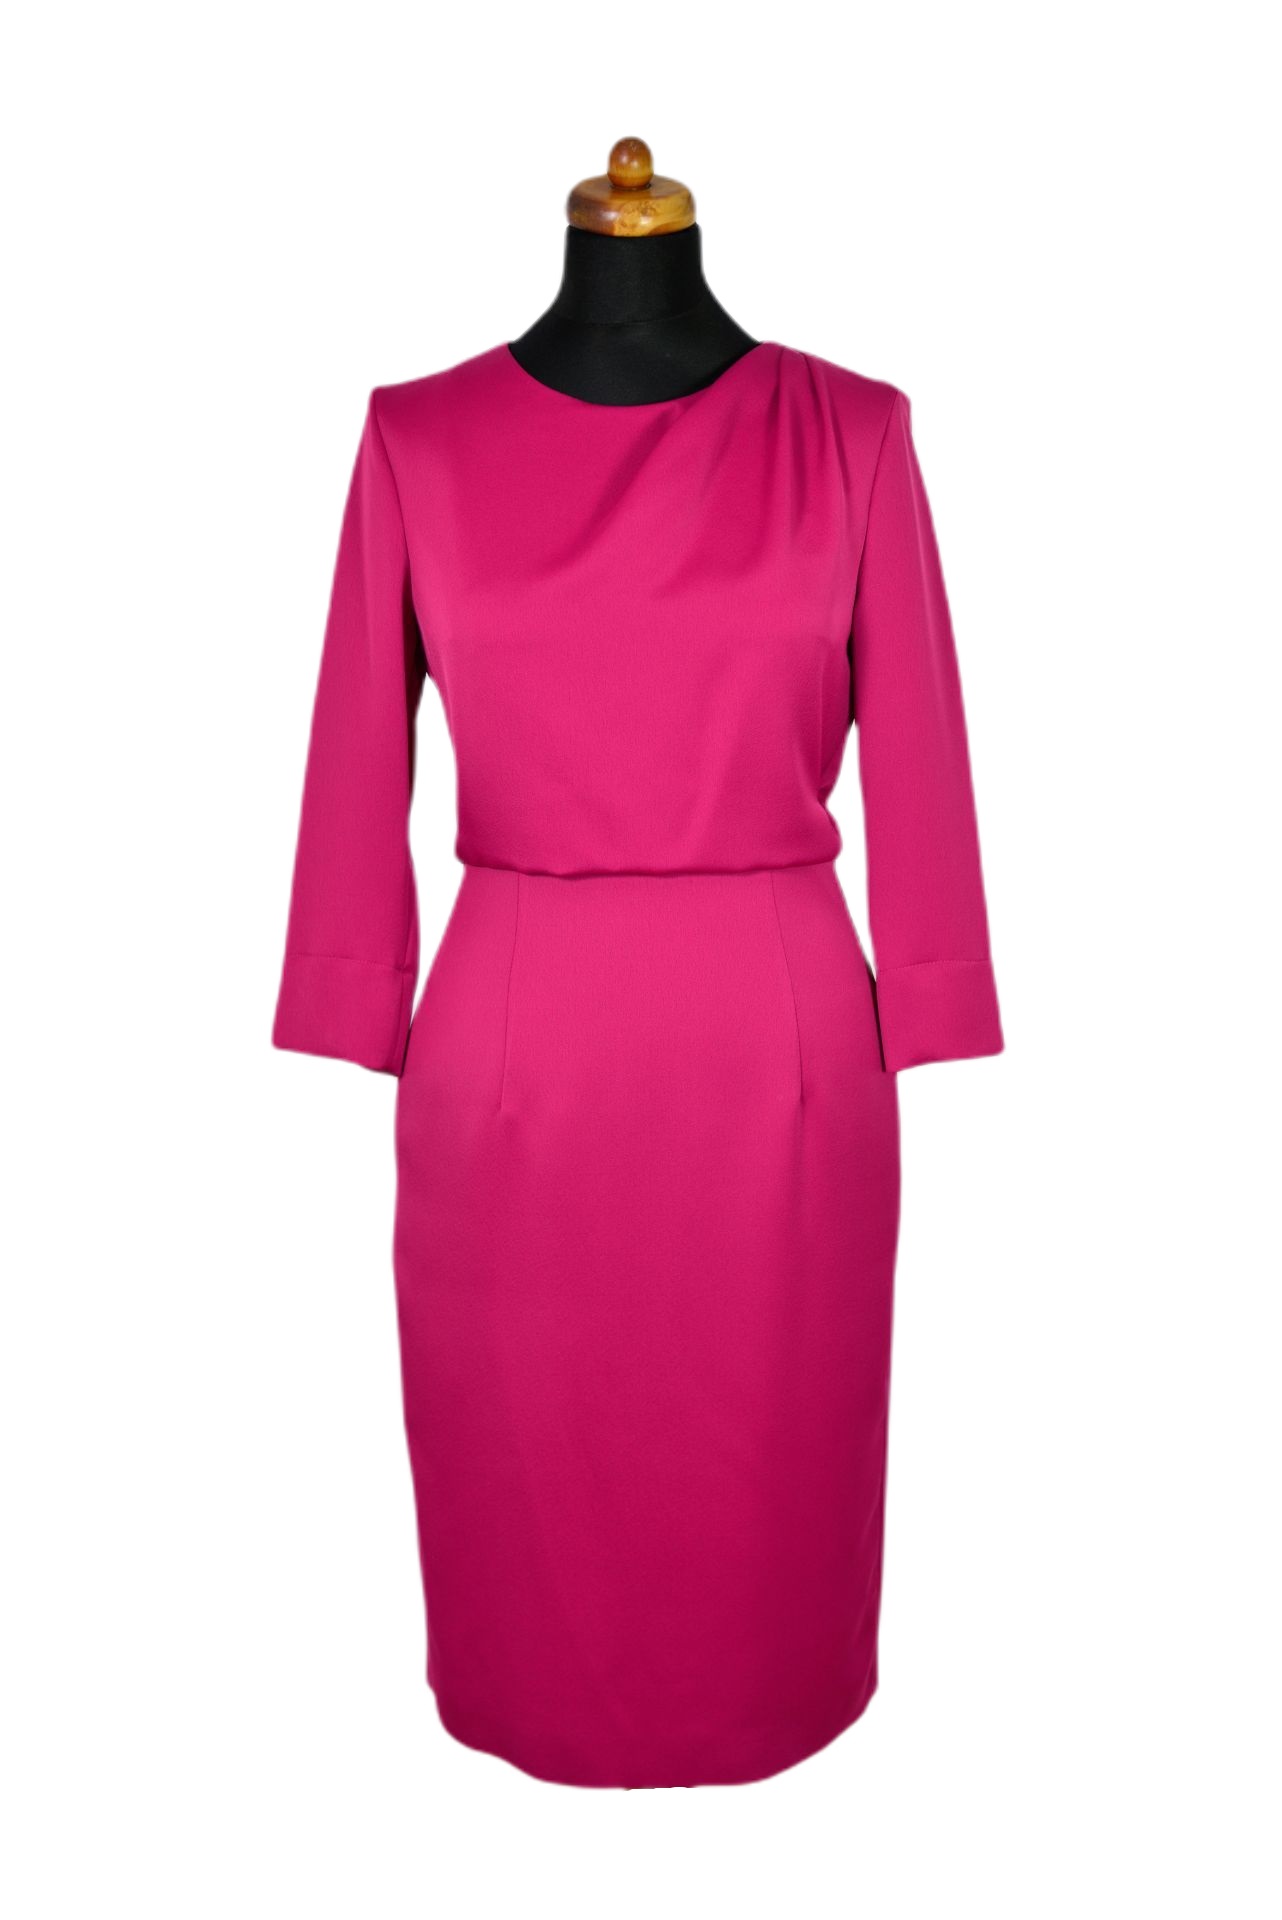 Kleid von Stemile in Farbe Pink in Groesse 40 hier in der Totalen zu sehen freigestellt